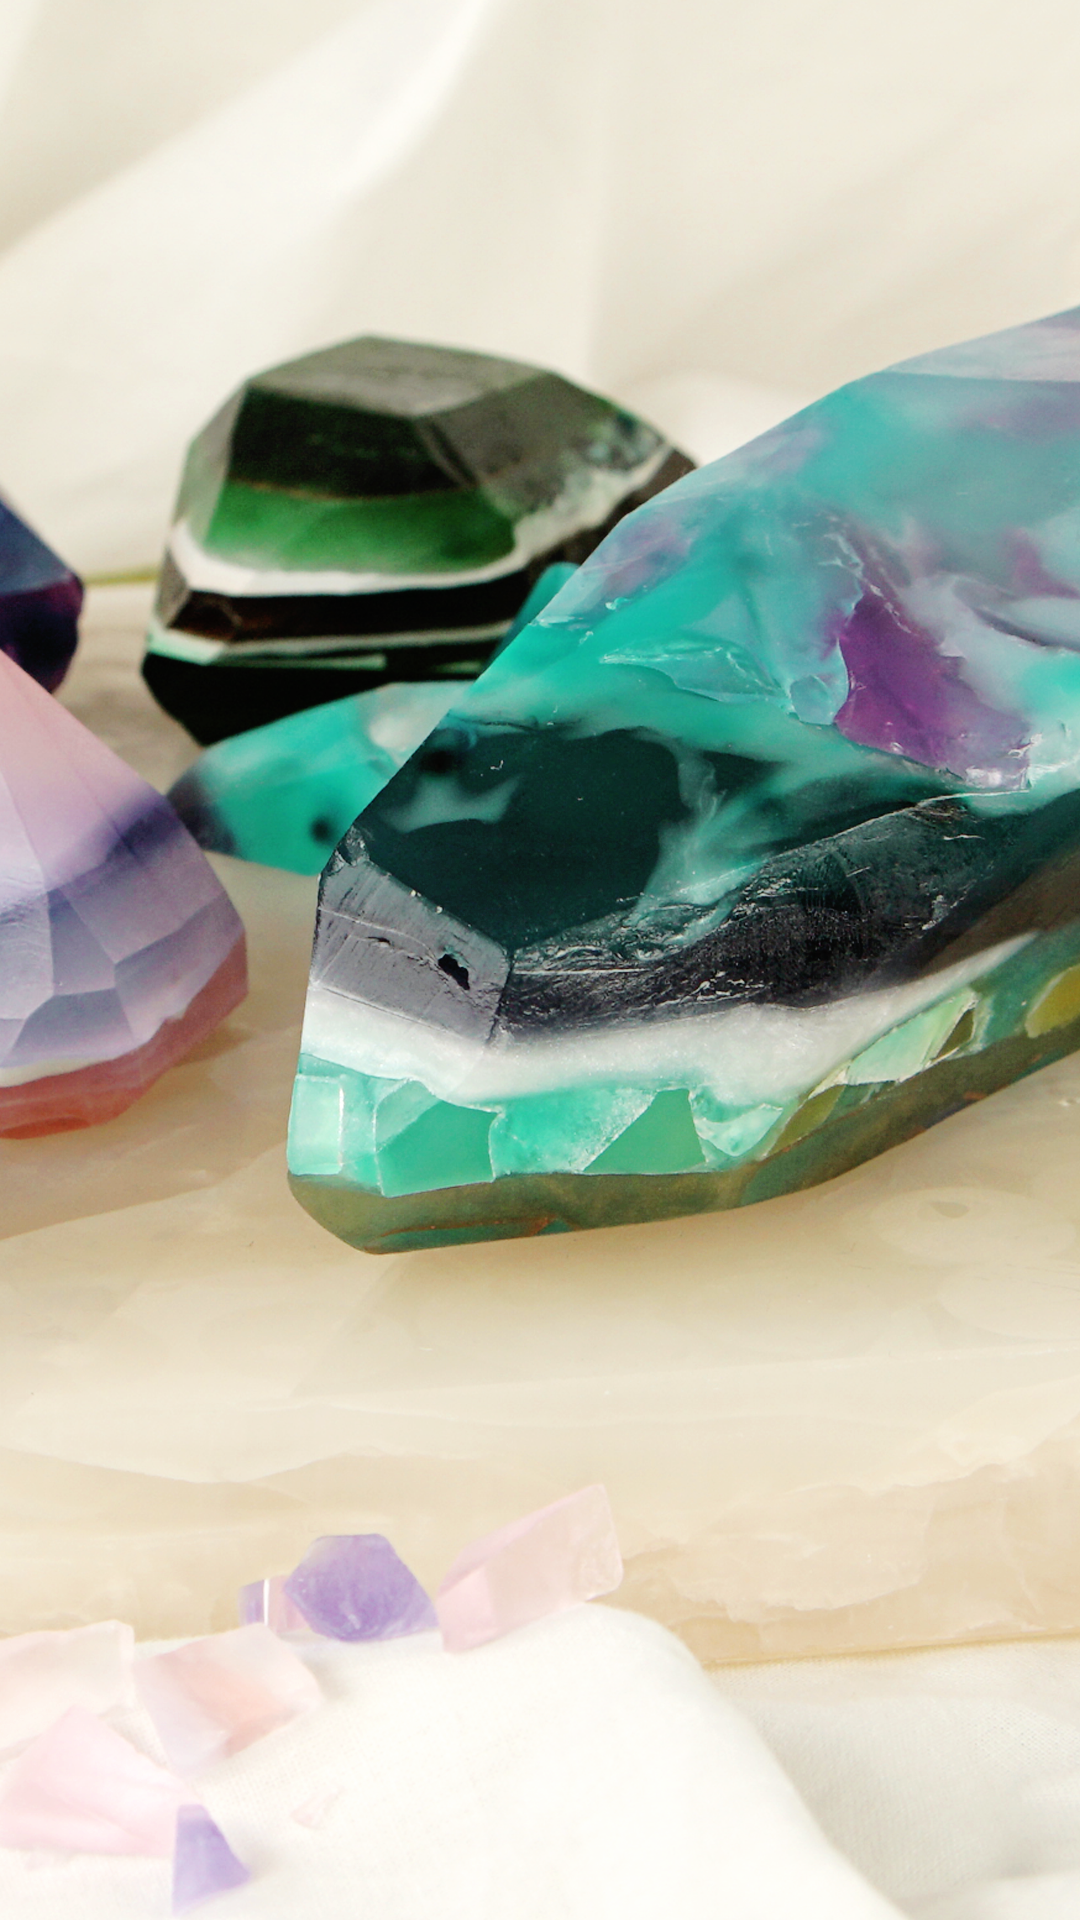 Stunning Jewel Soap - Stunning Jewel Soap -   17 diy Soap gemstone ideas